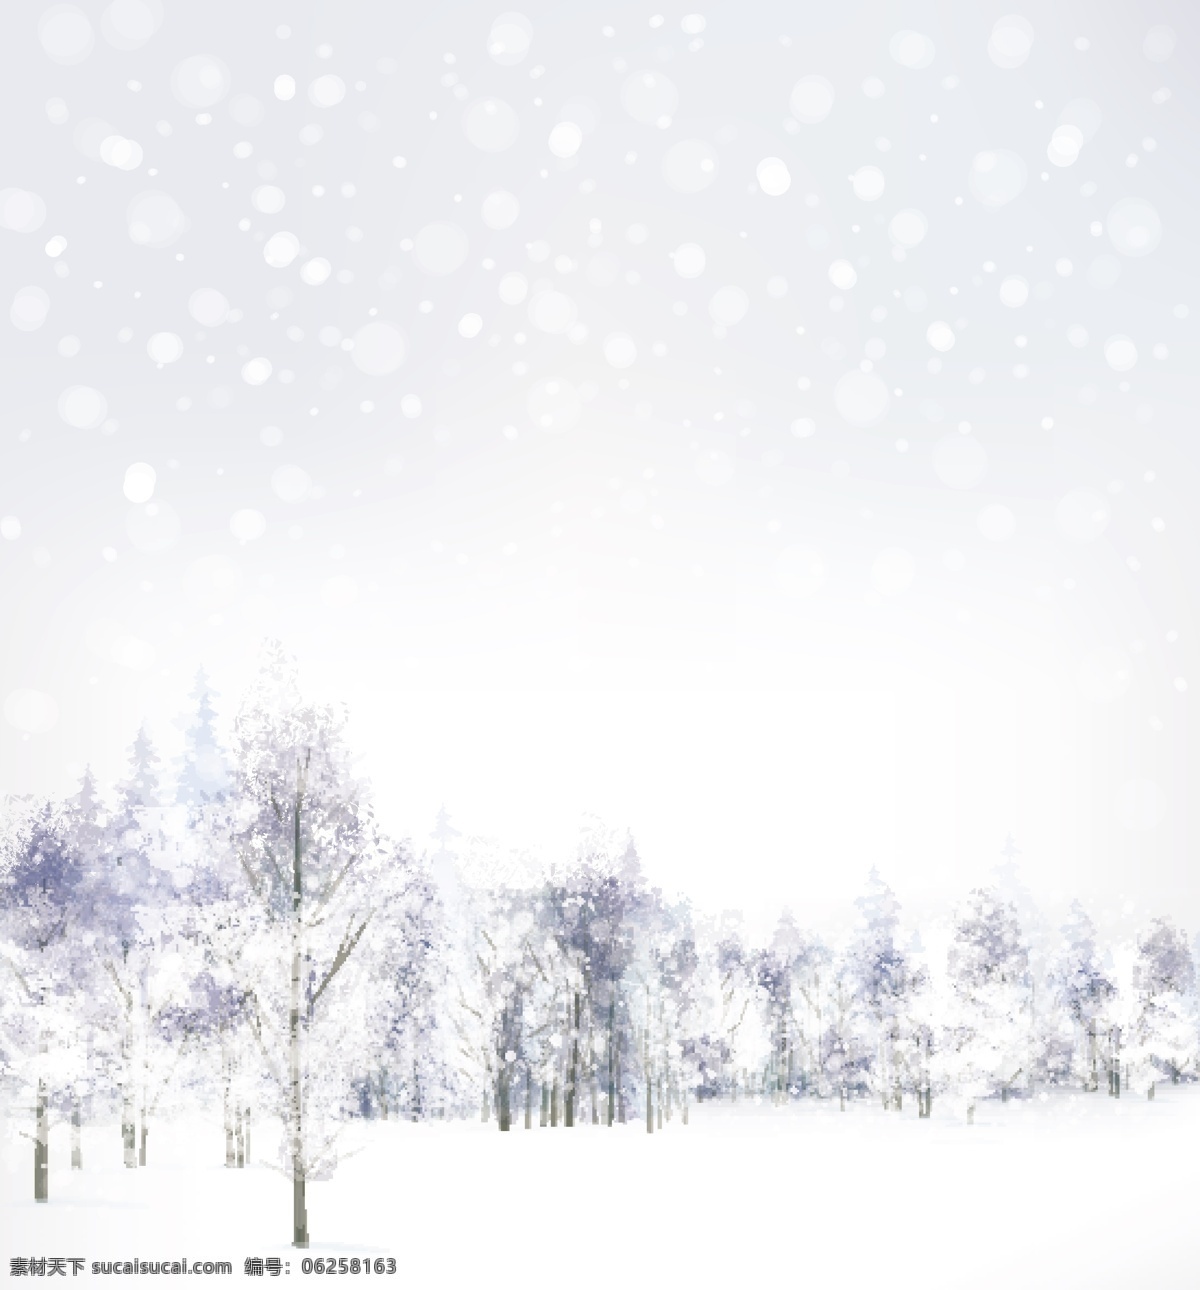 精美 白雪 唯美 背景 冬季背景 冬季素材 冬天 风景 卡通 圣诞节素材 素材背景 唯美背景 新年背景 新年素材 雪花 雪景